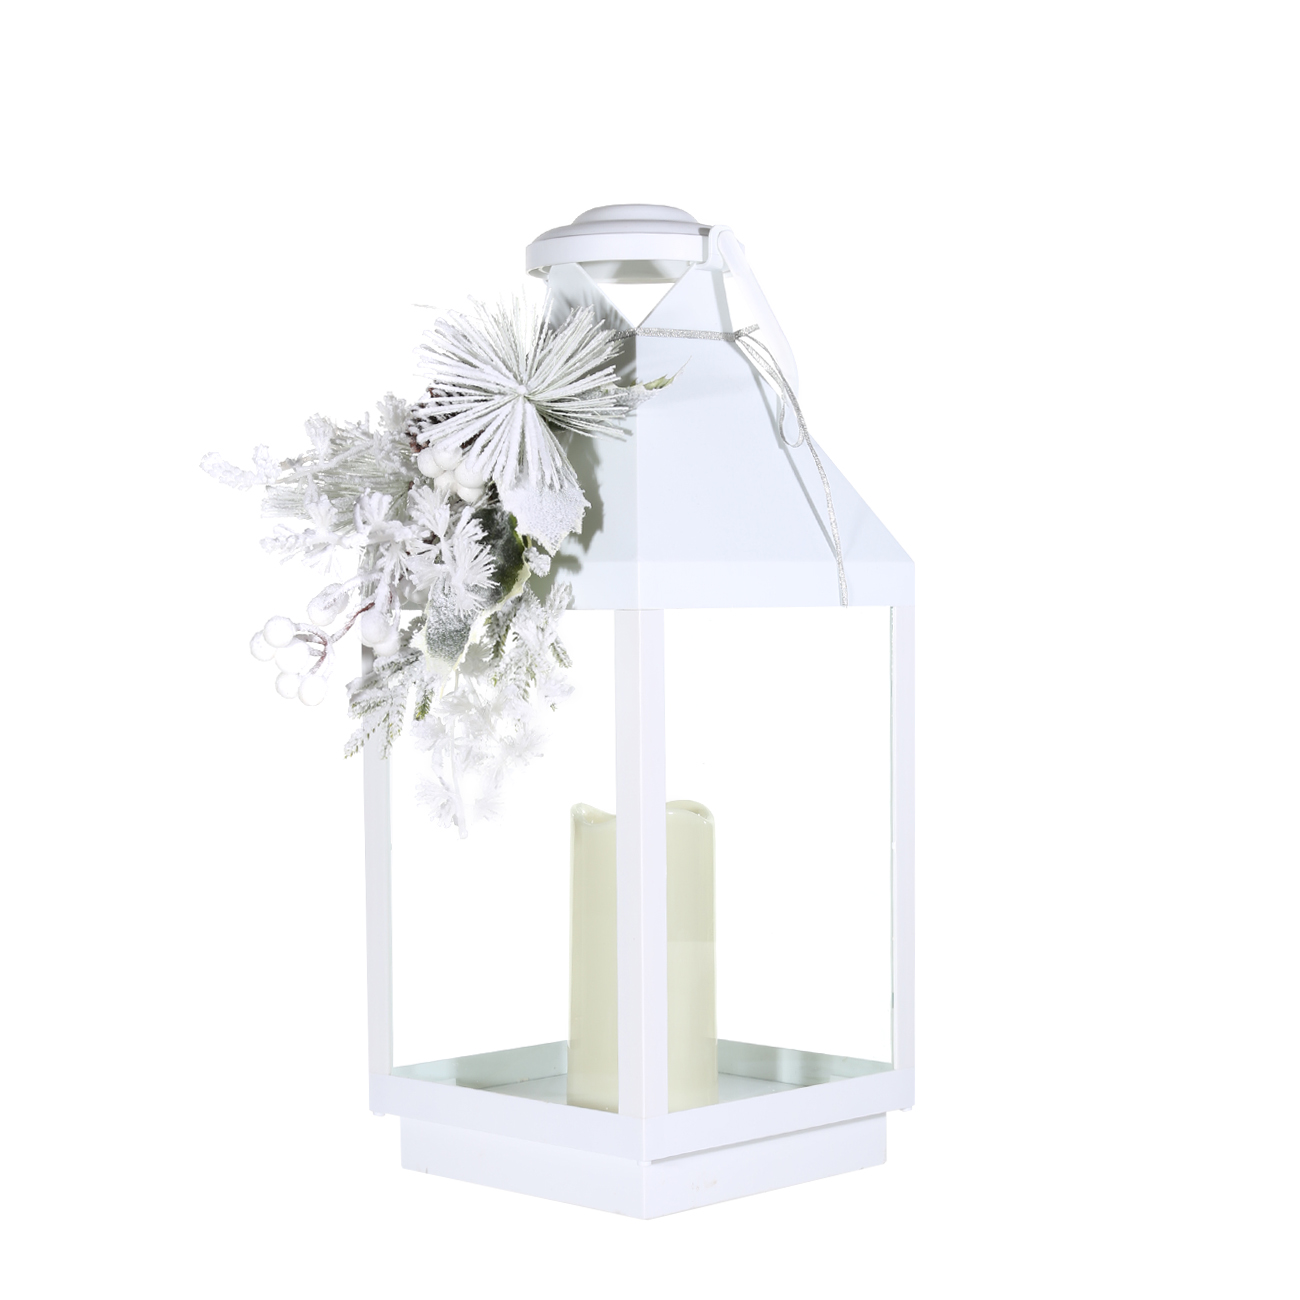 Светильник декоративный, 47 см, пластик, белый, фонарь со свечой, Ветка, Winter style